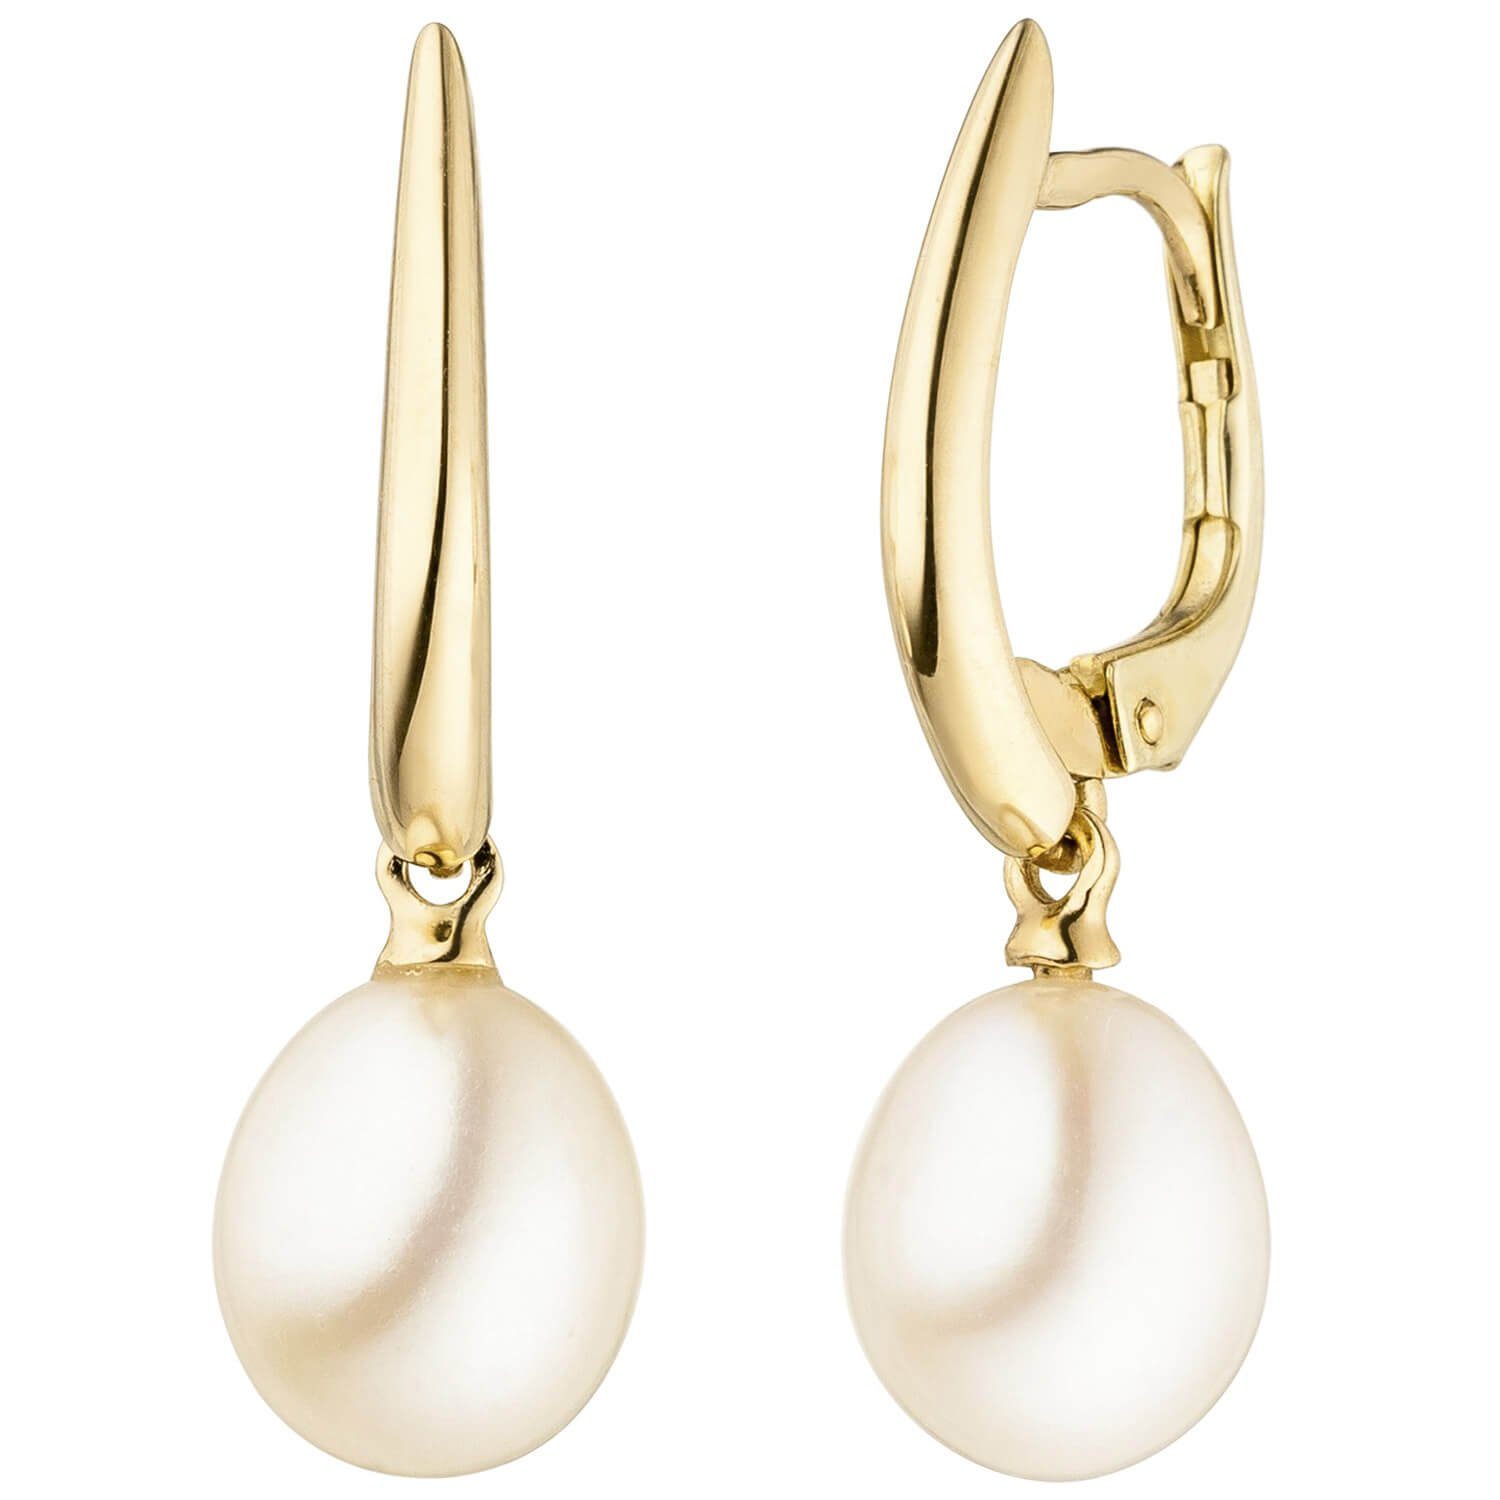 Schmuck Krone Paar Ohrhänger Ohrhänger mit Süßwasser-Perlen 585 Gold Gelbgold Ohrringe Boutons 24,5x7,5mm, Gold 585